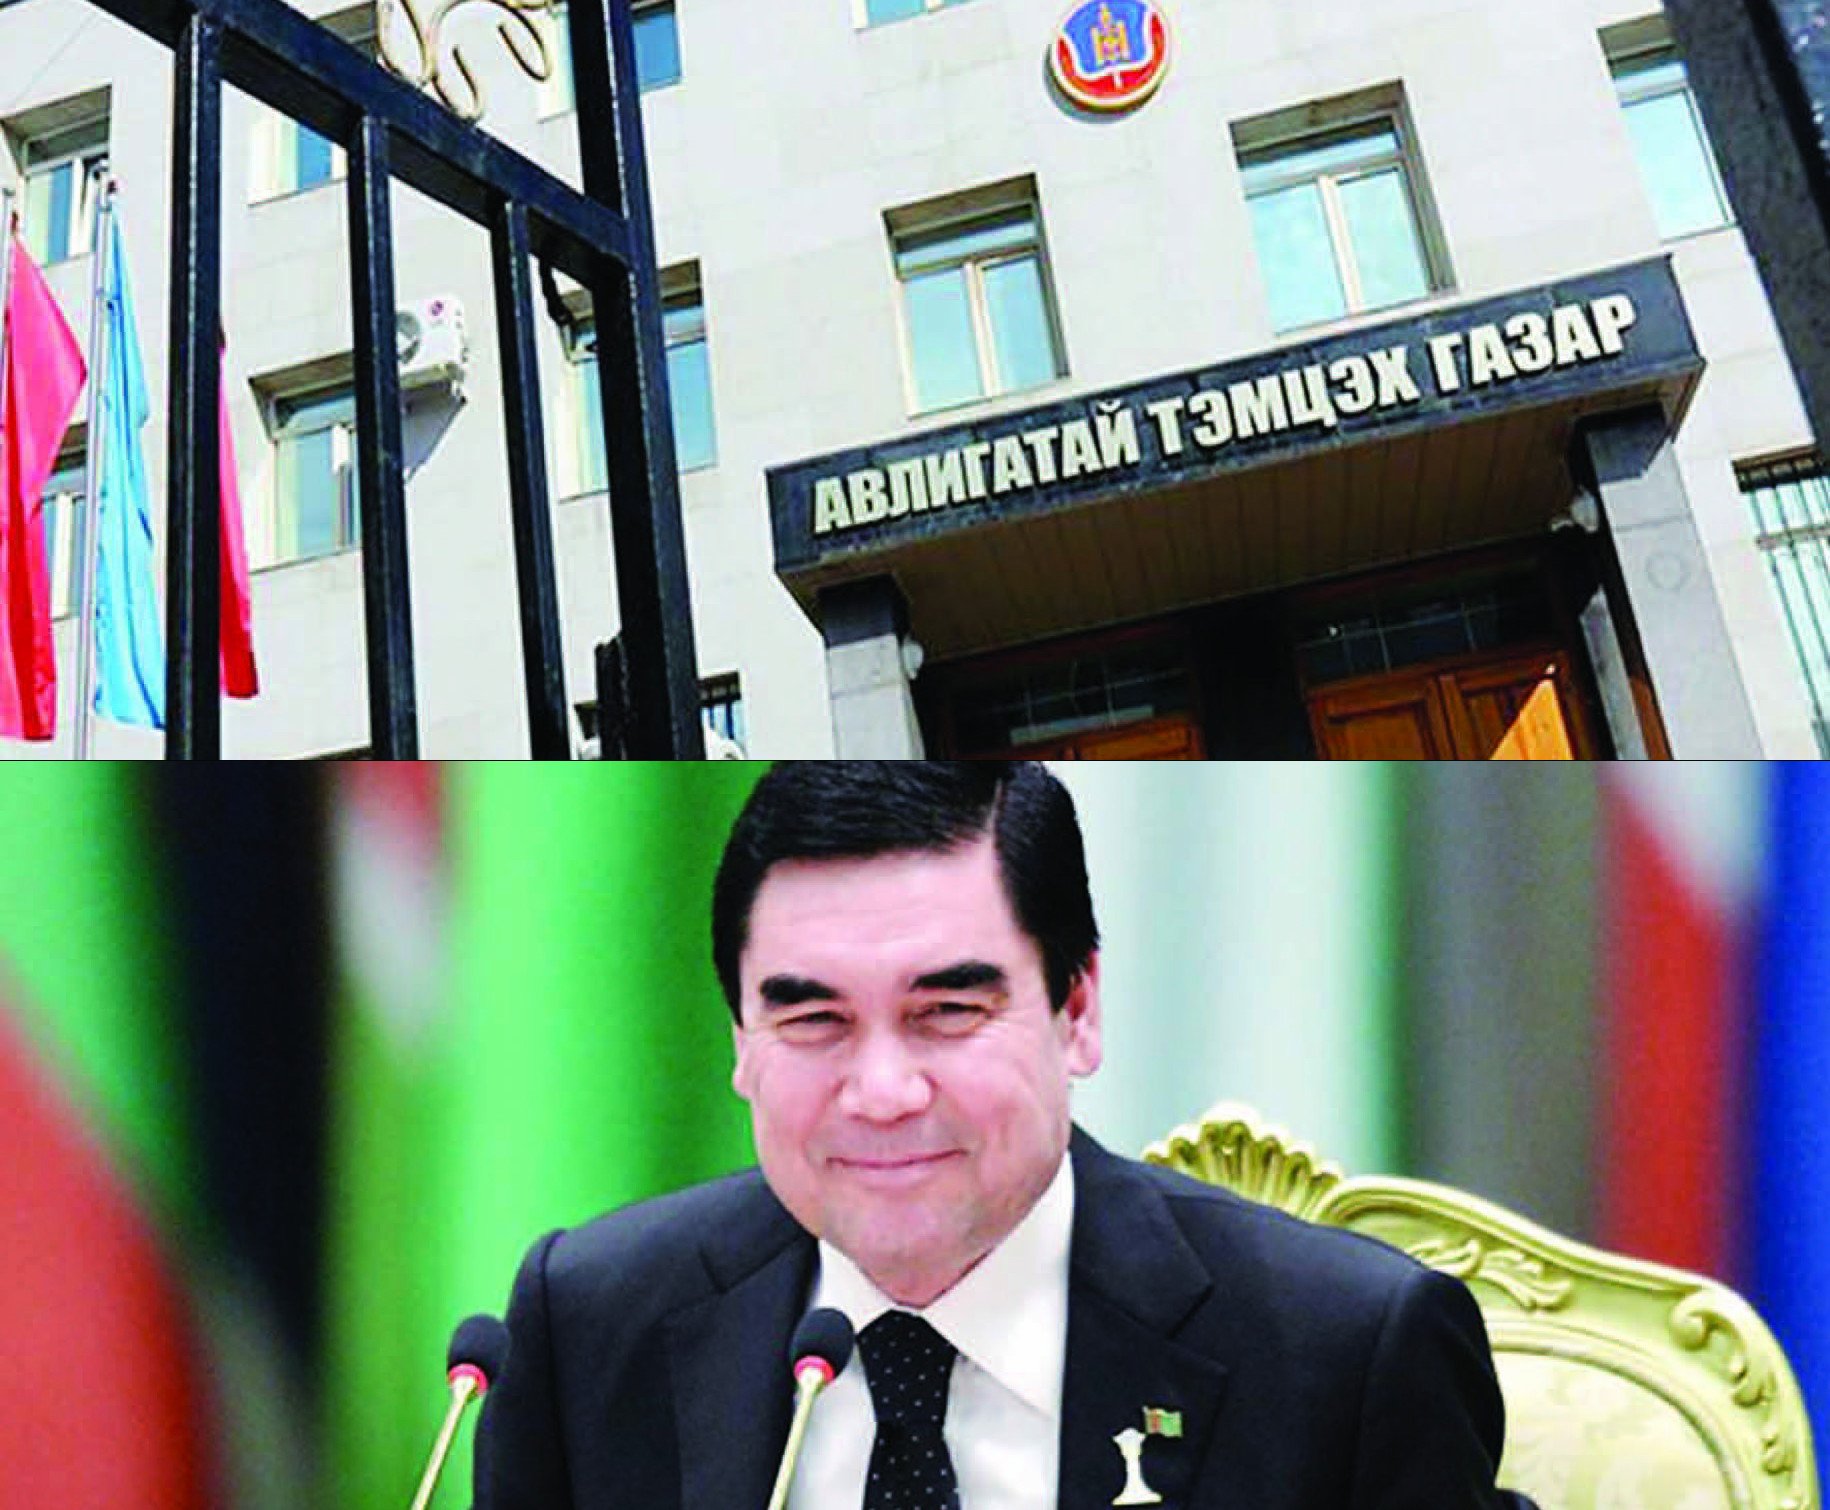 Туркменистан авлигачдаа шившиглэж байгаа нь арай хүнлэг юм аа